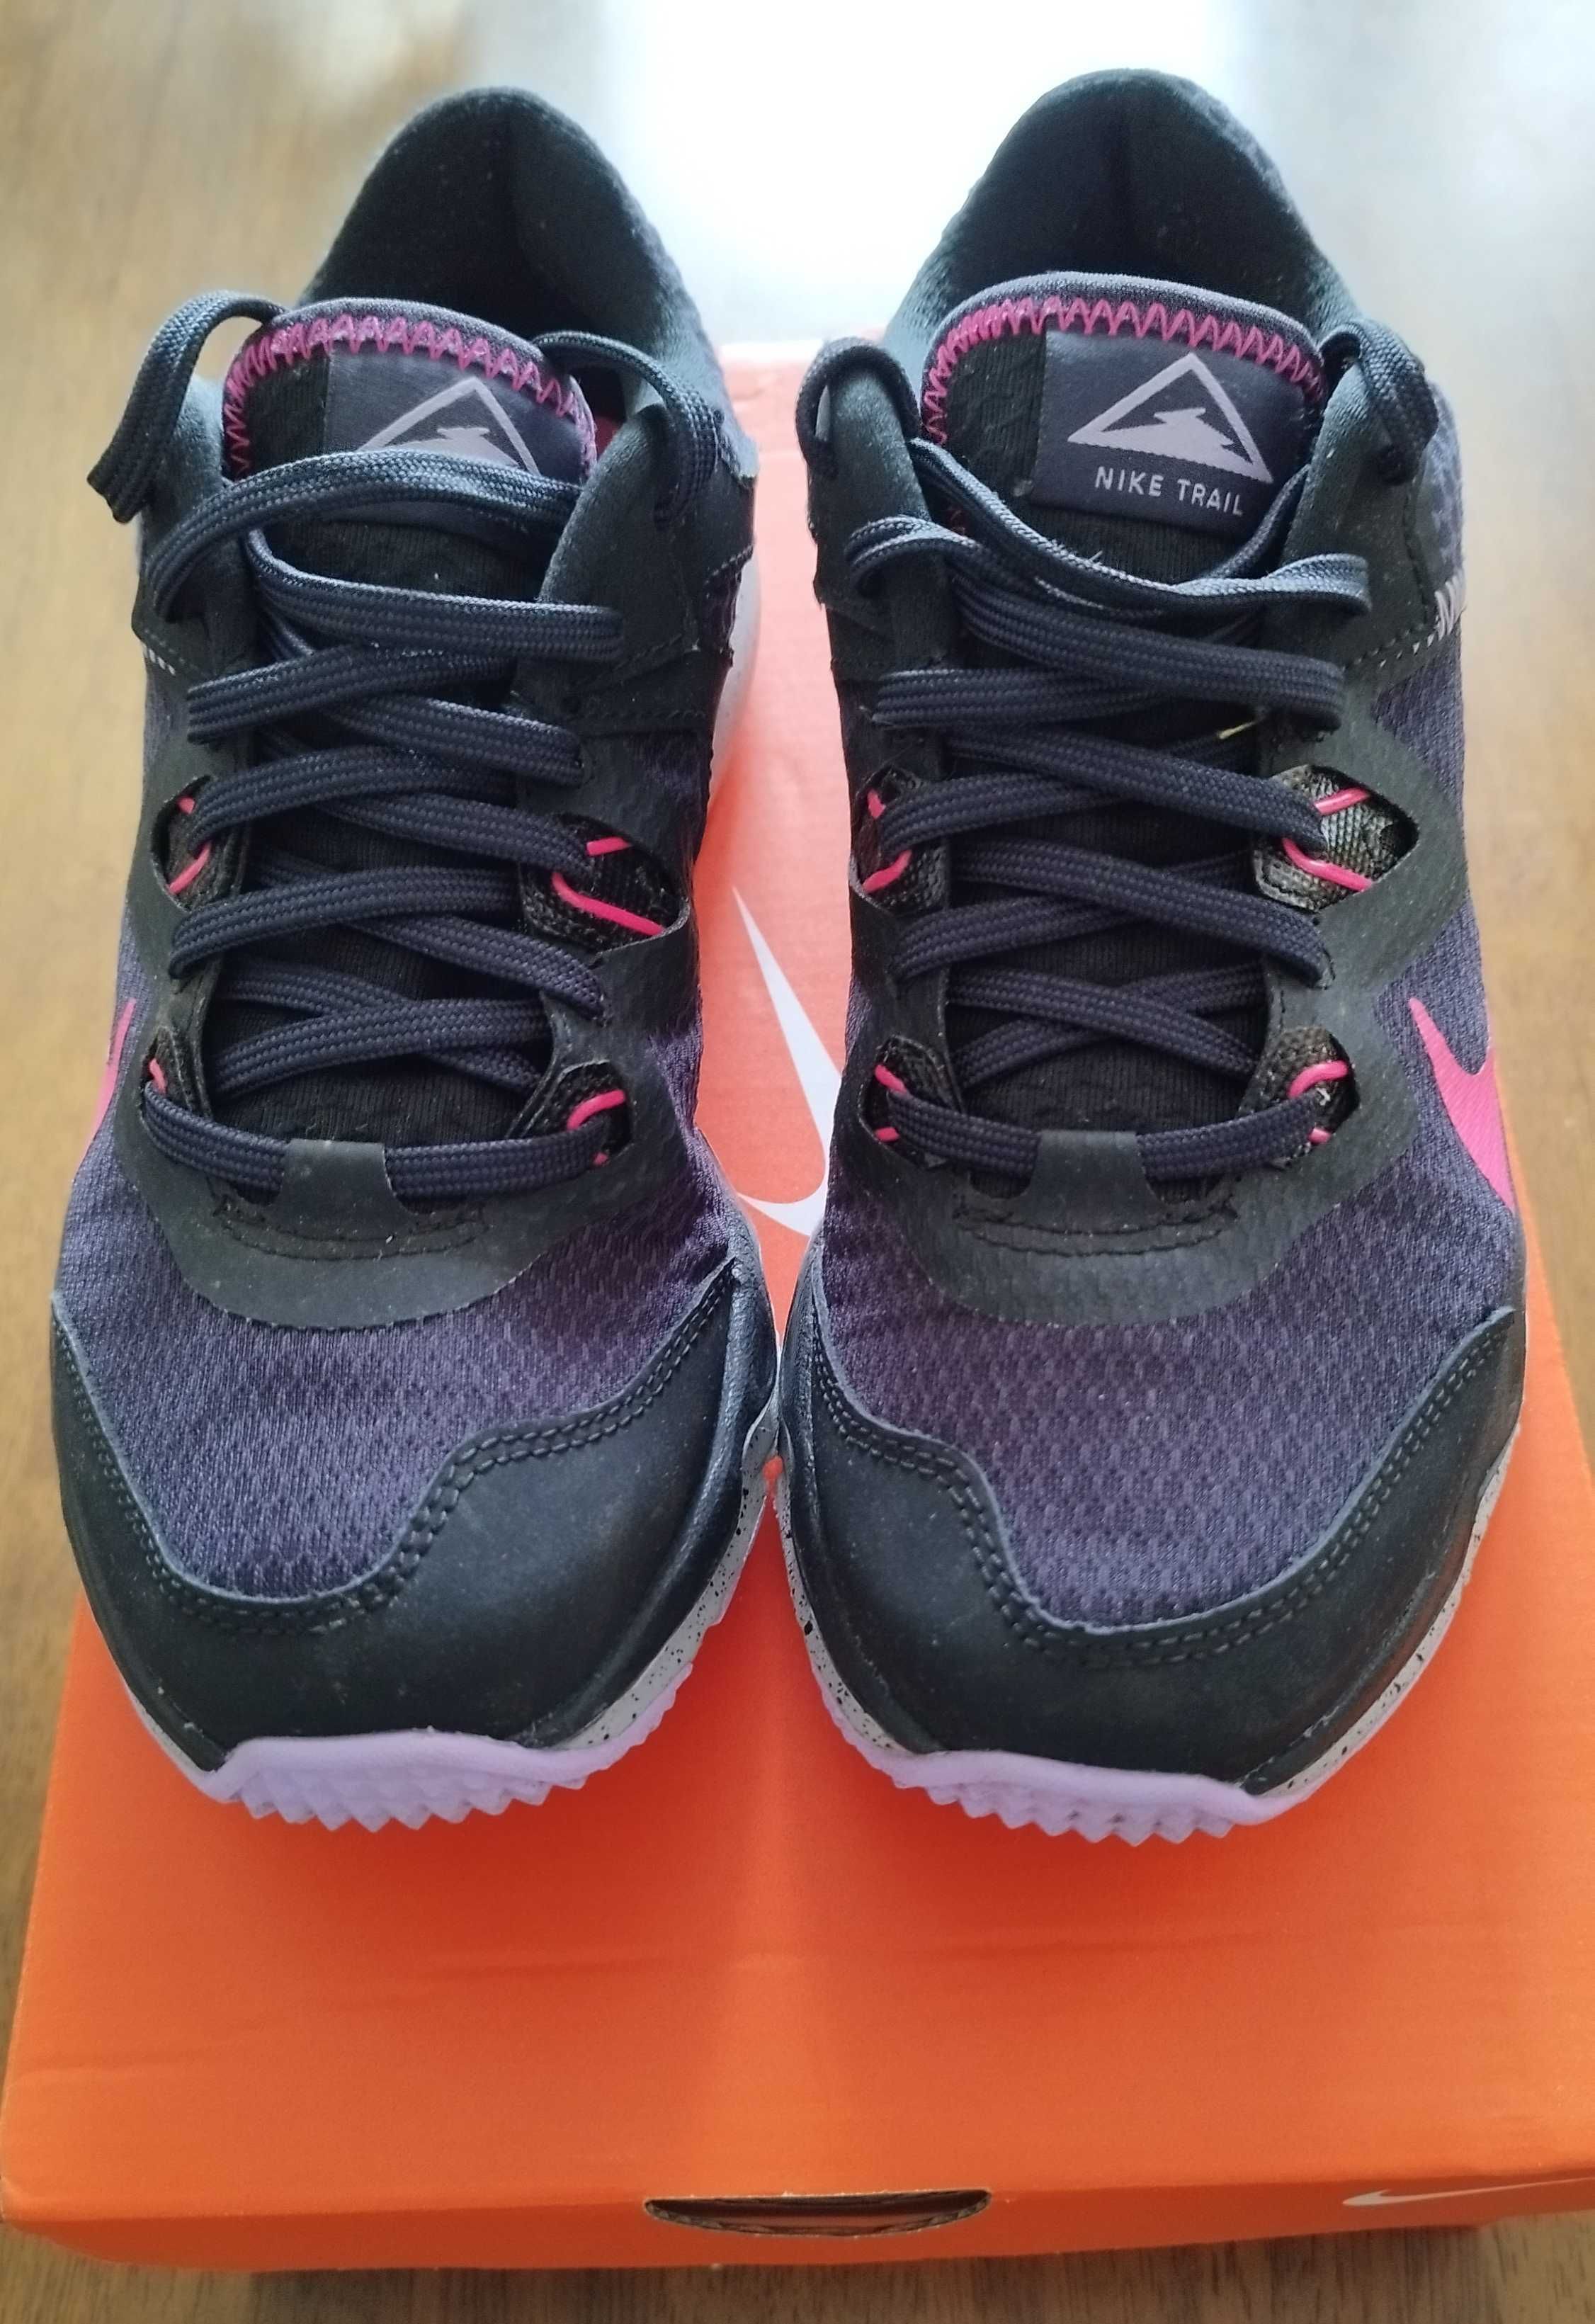 Nike Buty damskie sportowe JUNIPER TRAIL r. 37,5 do biegania w terenie